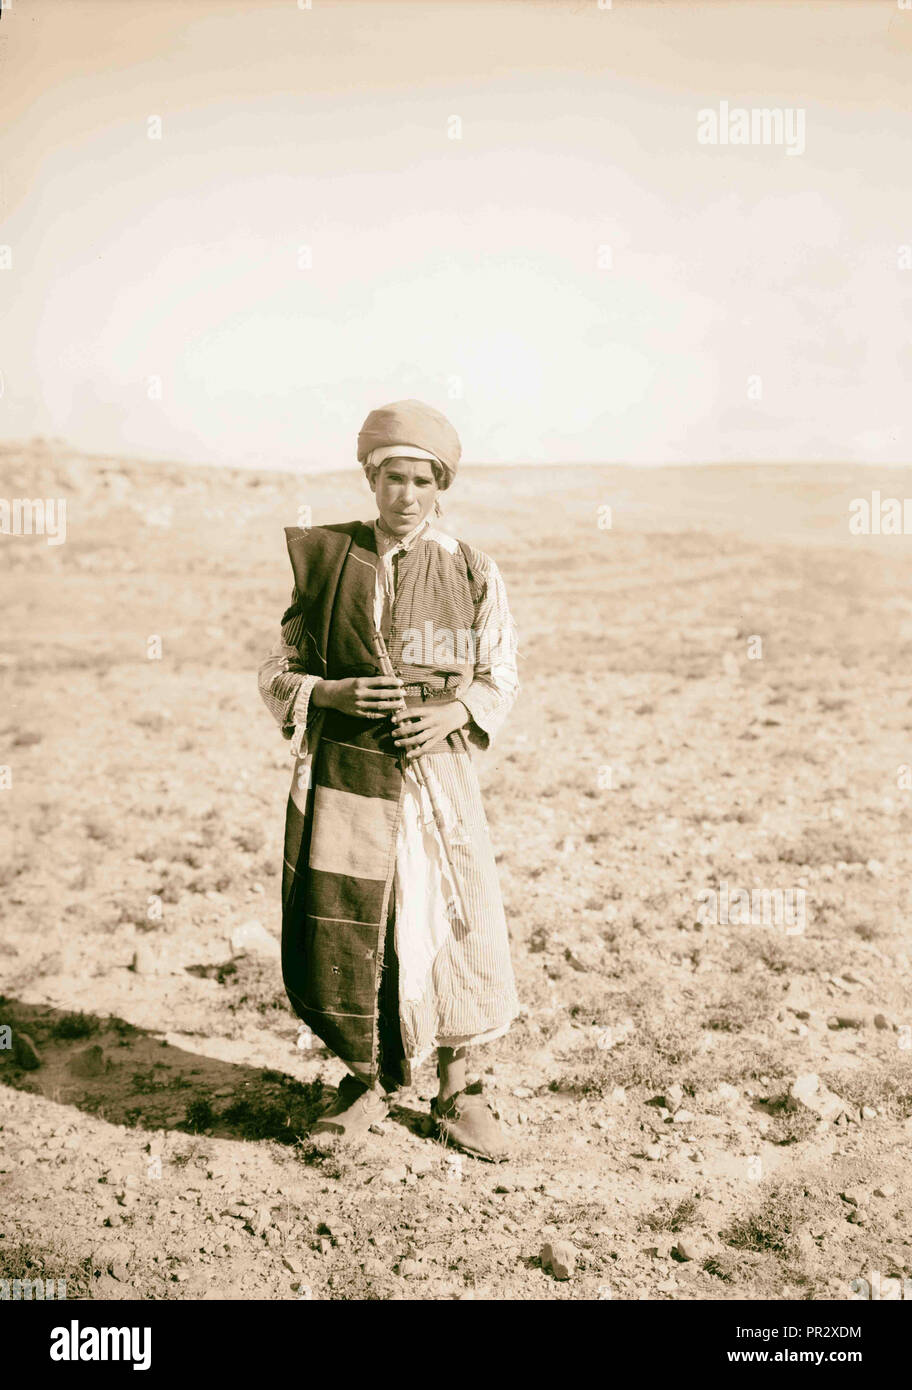 Bergers jouant de la flûte 1898, Moyen-Orient, Israël et/ou Palestine Banque D'Images